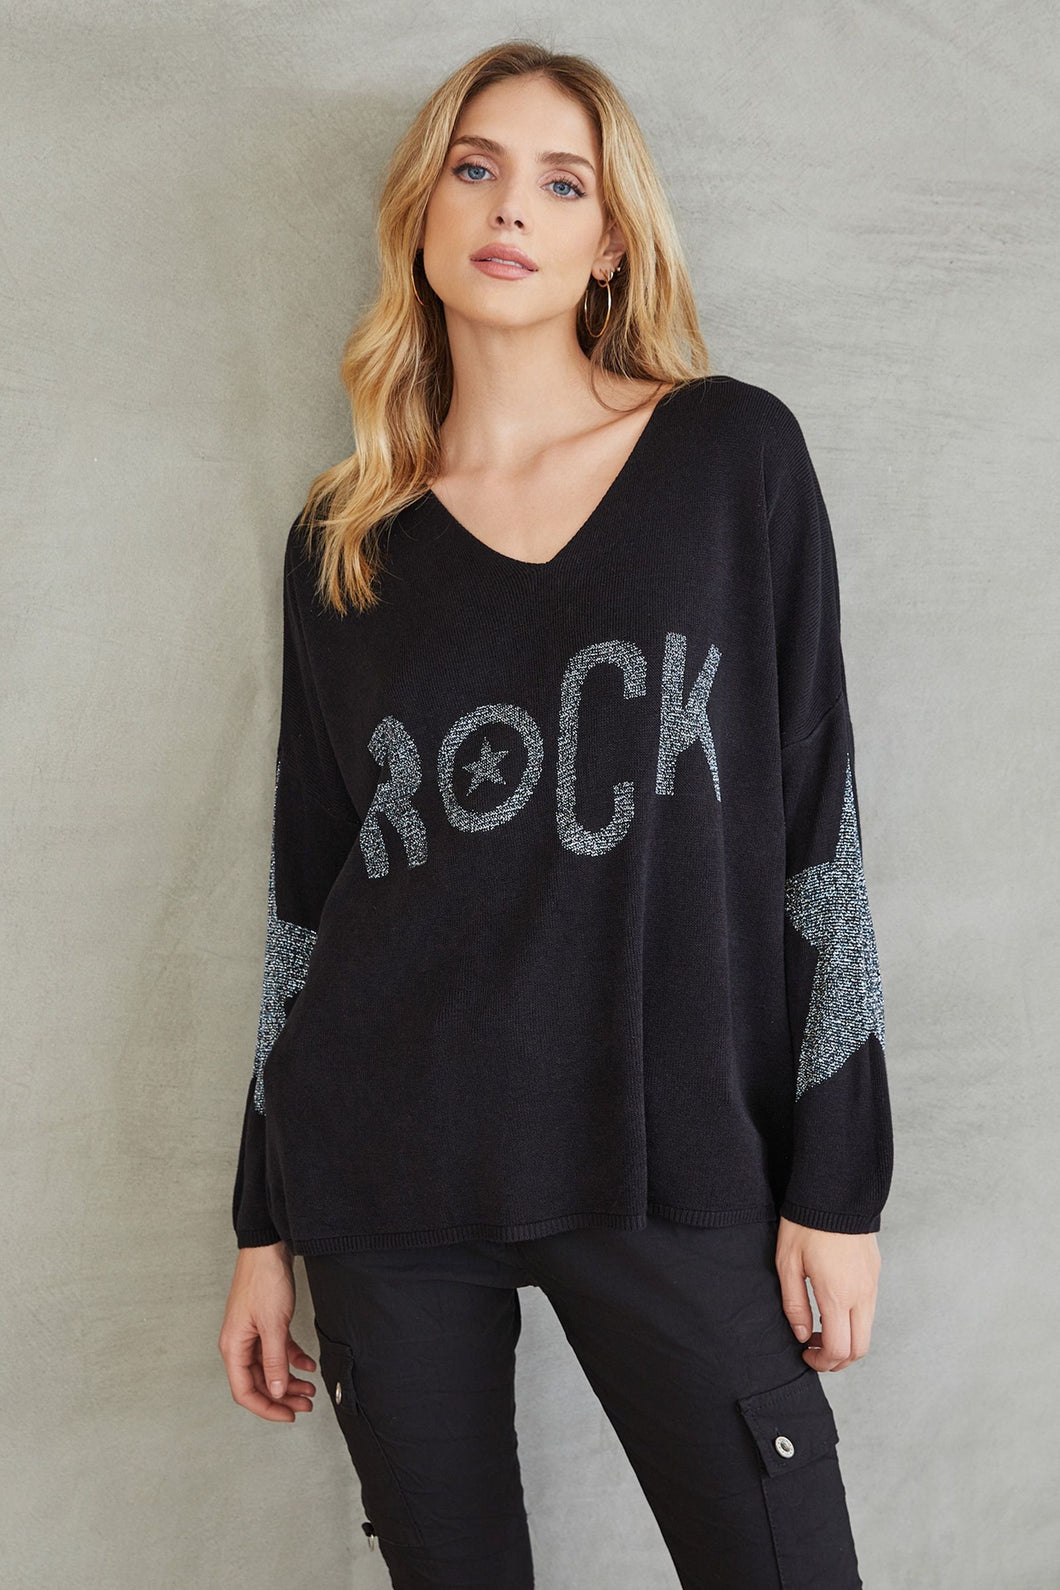 Rock Star Sequin Sweater